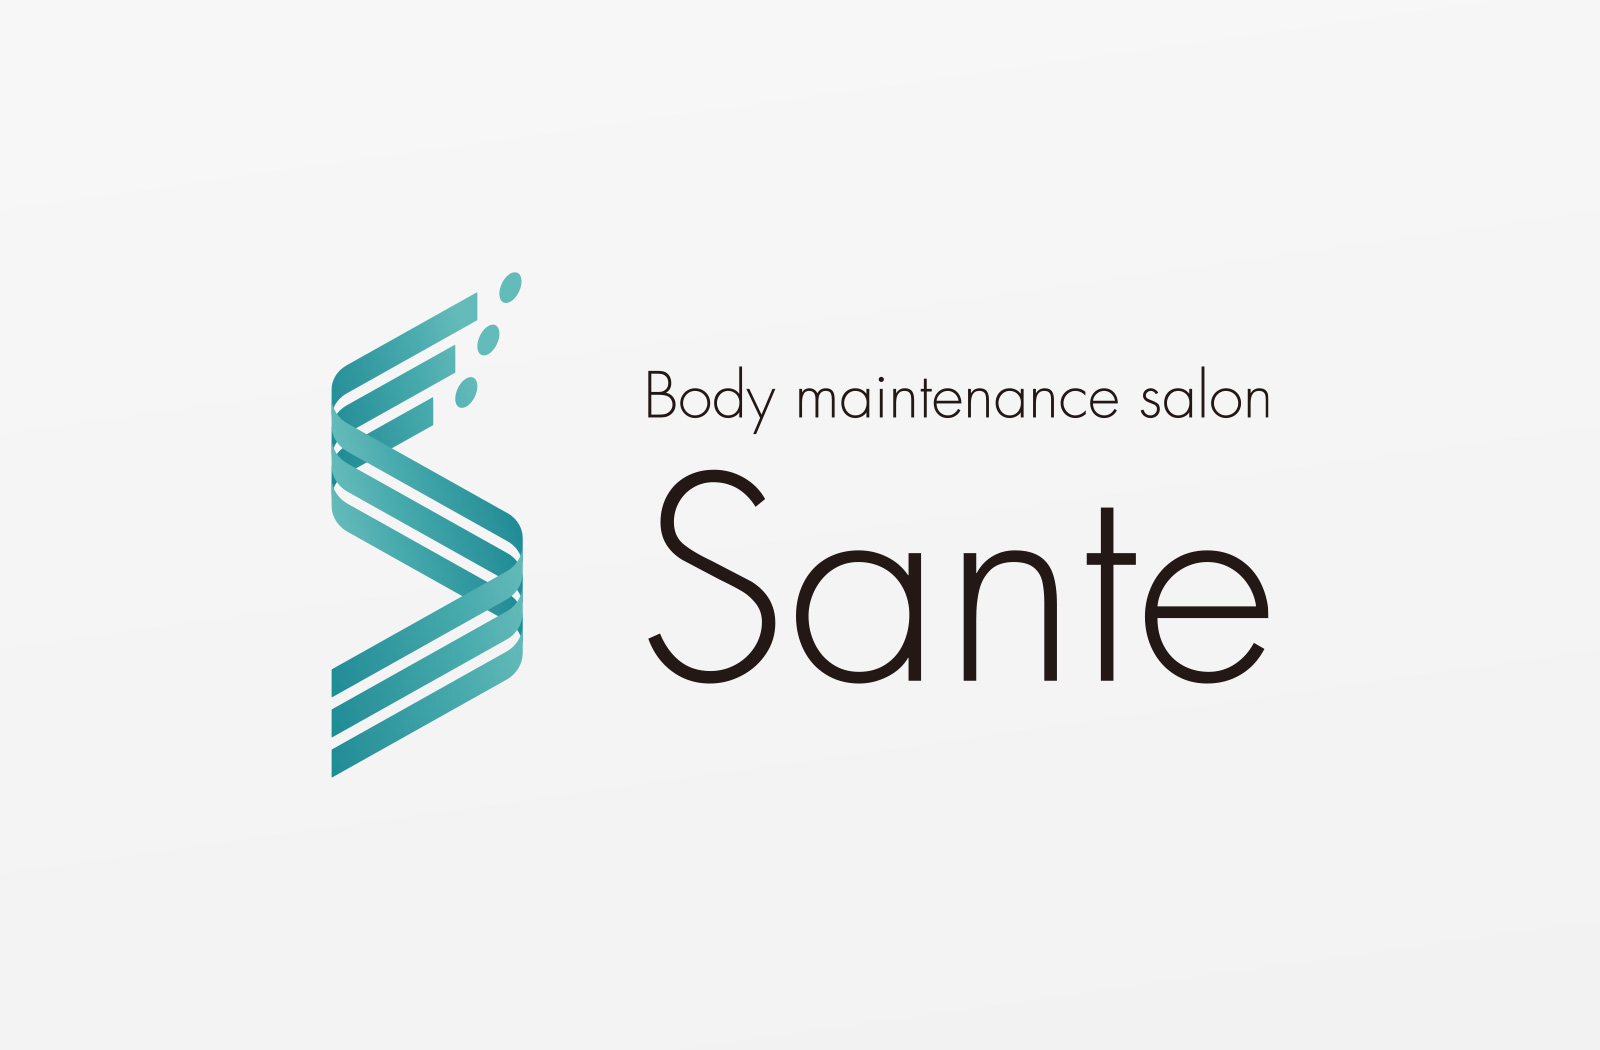 Body naintenance salon Sante ロゴ